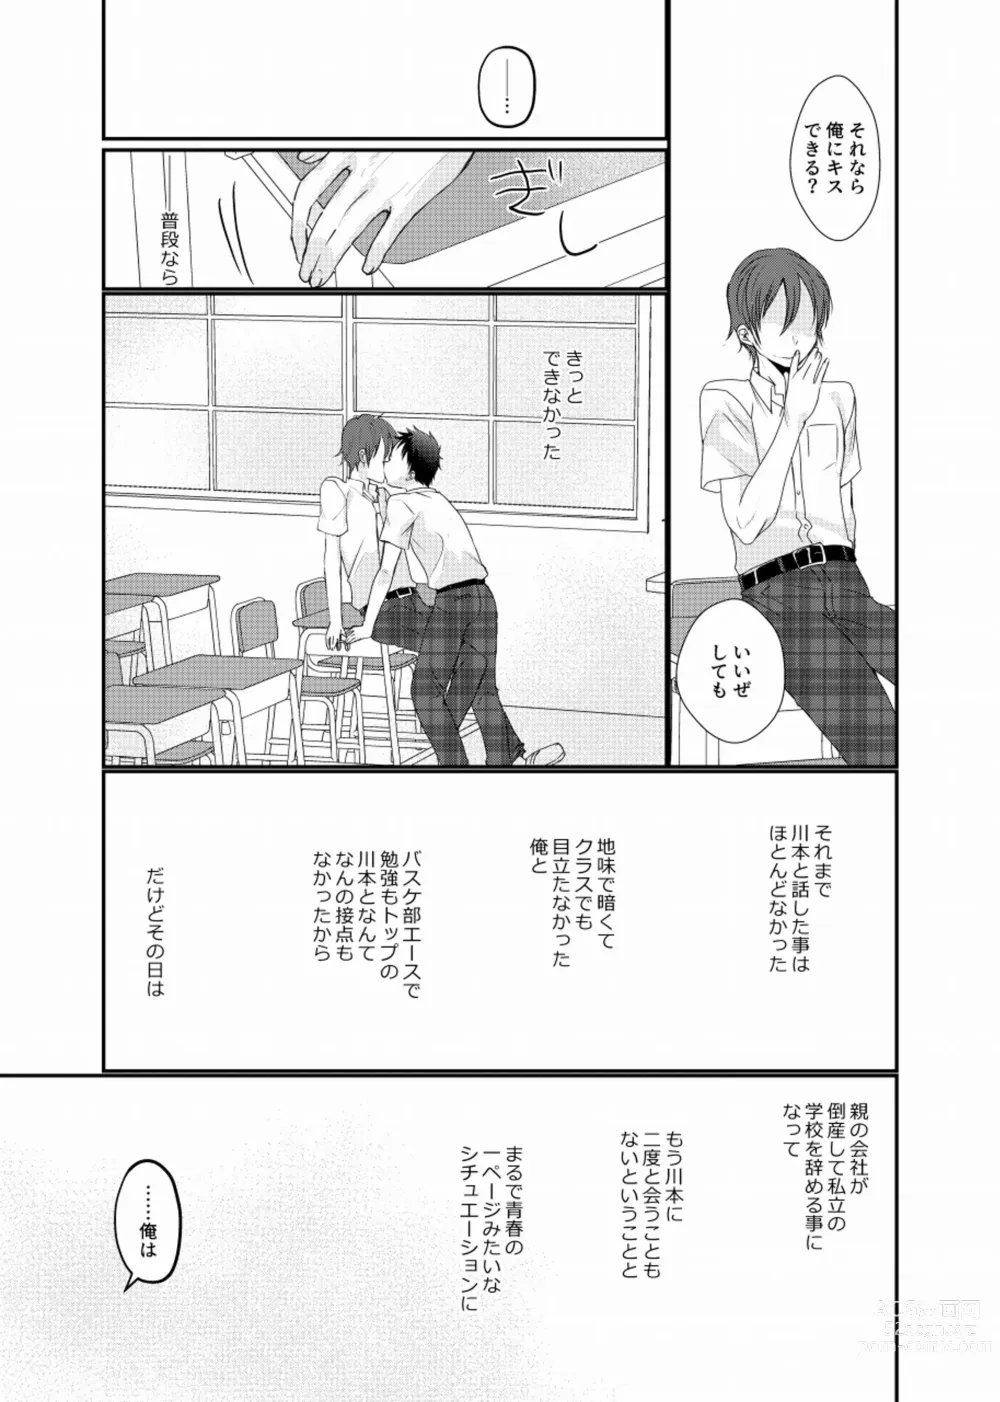 Page 14 of doujinshi Meisou Shounen